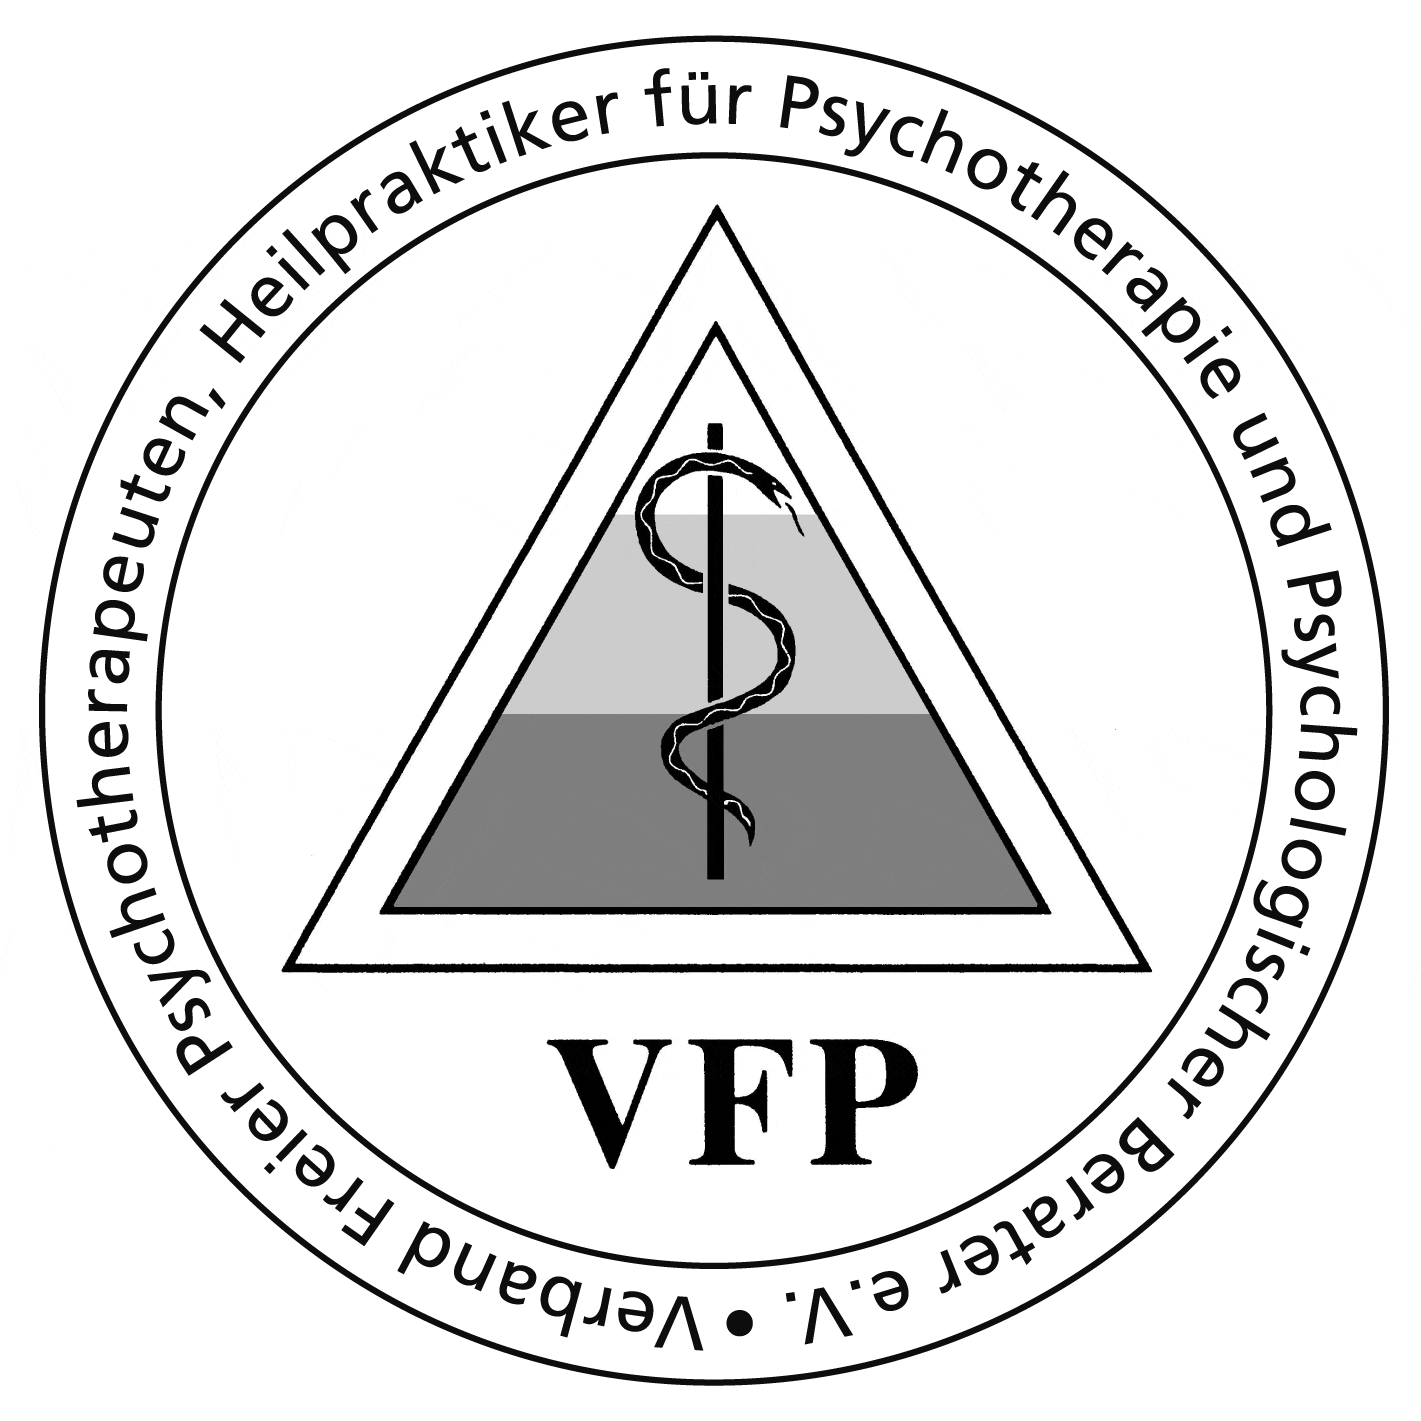 Mitglied im Verband VFP e.V.